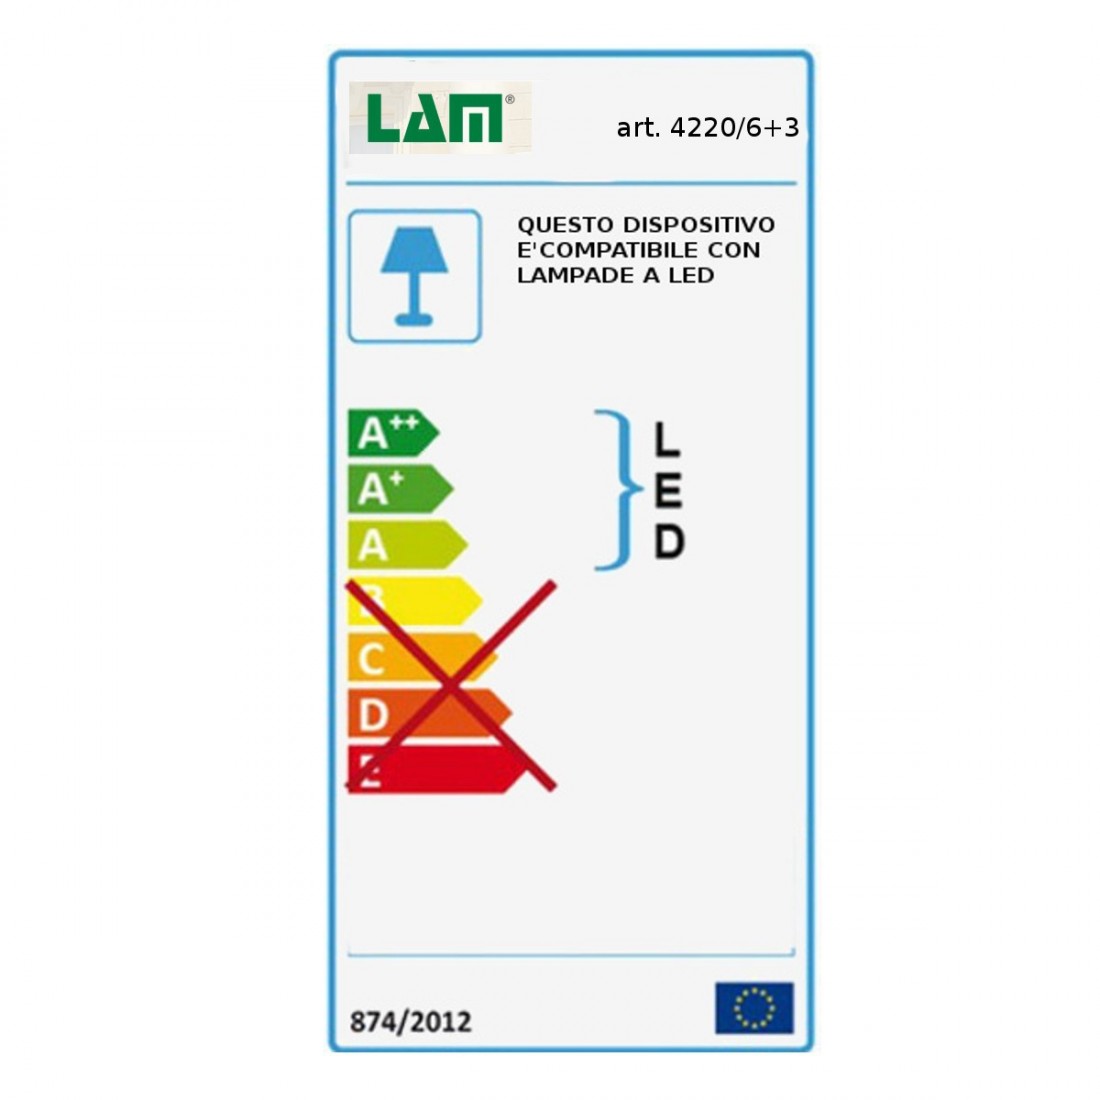 Lampadario LM-4220 6+3 E14 LED bronzo marrone ruggine sospensione multiluce classico ferro vetro interno